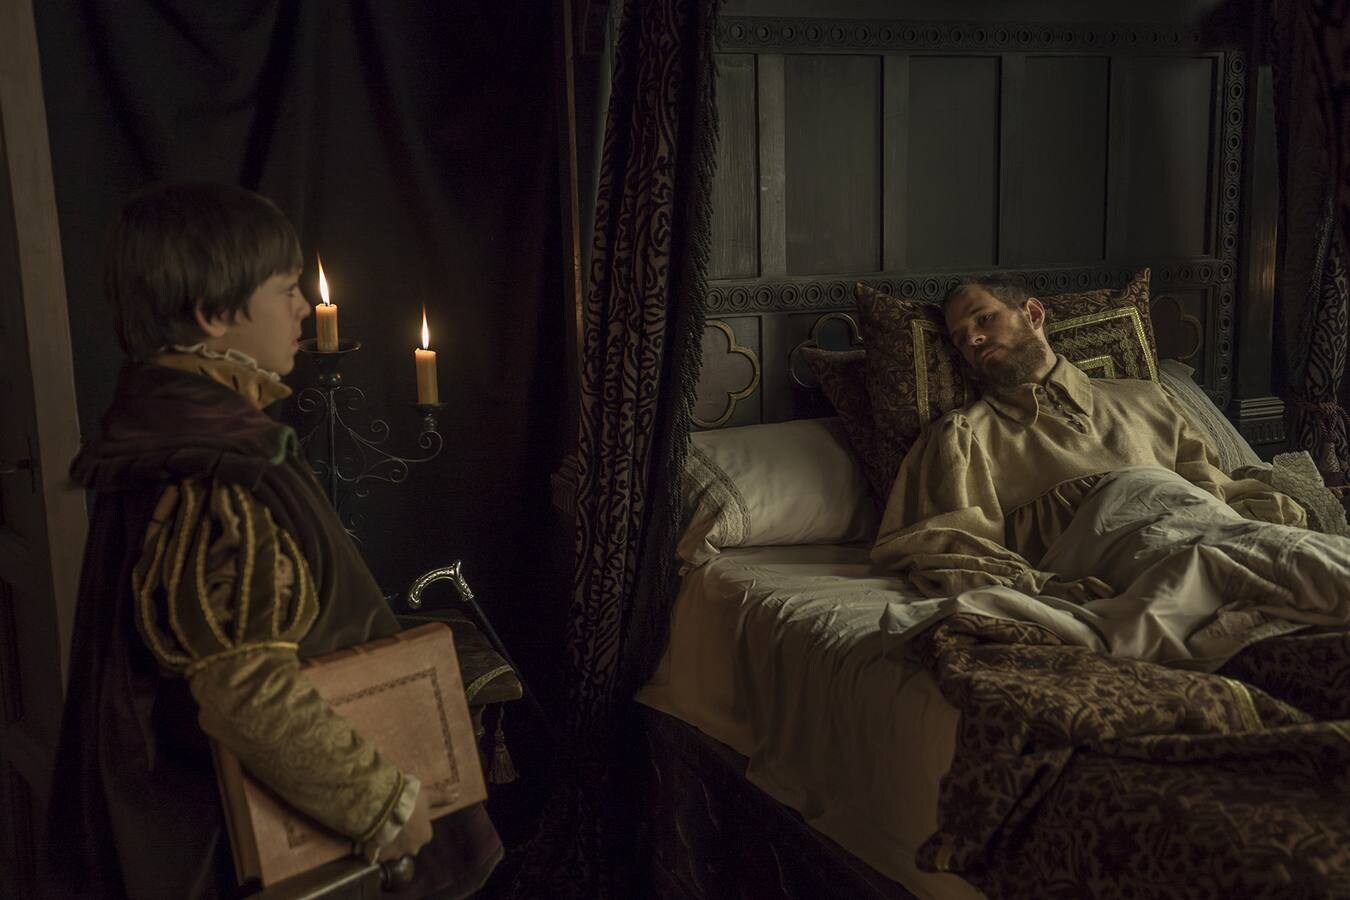 Postrado en una cama, Carlos V verá cómo su imperio llega a su fin